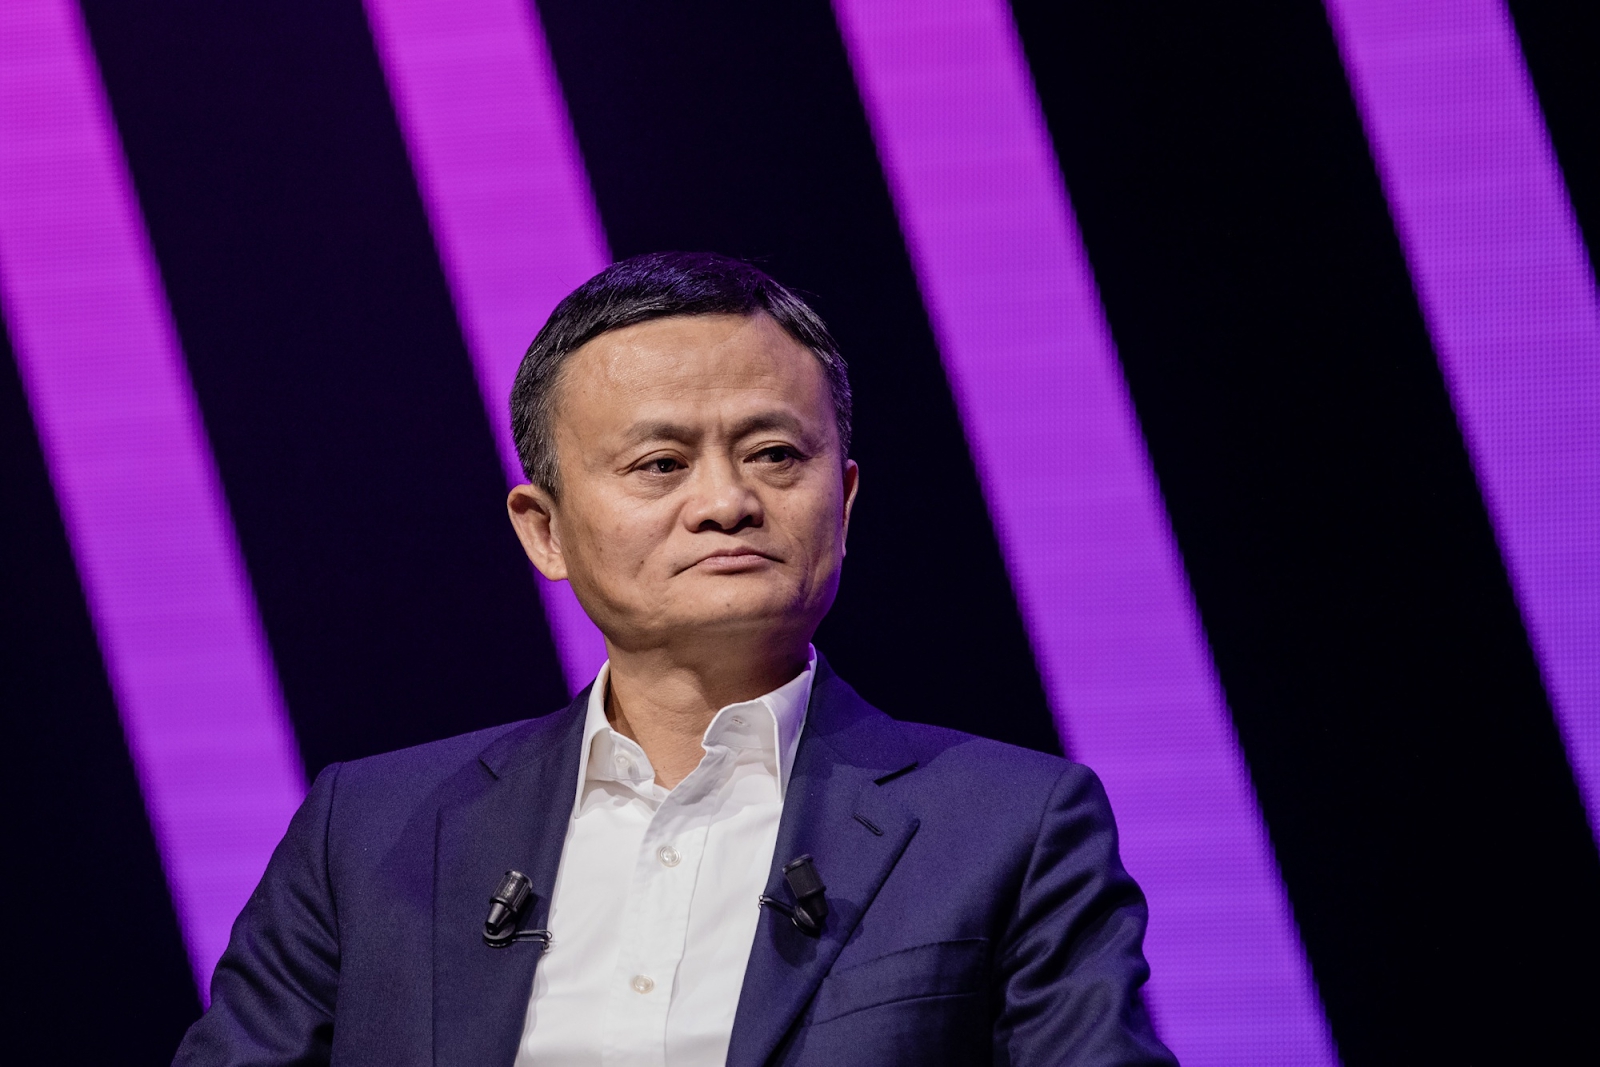 Kiện tỷ phú Jack Ma ra tòa và đòi bồi thường hơn 3 tỷ đồng, ông chú 6X bị xử thua nhưng &quot;bất đắc dĩ&quot; trở nên giàu có, ai nhìn cũng phải ghen tỵ - Ảnh 6.